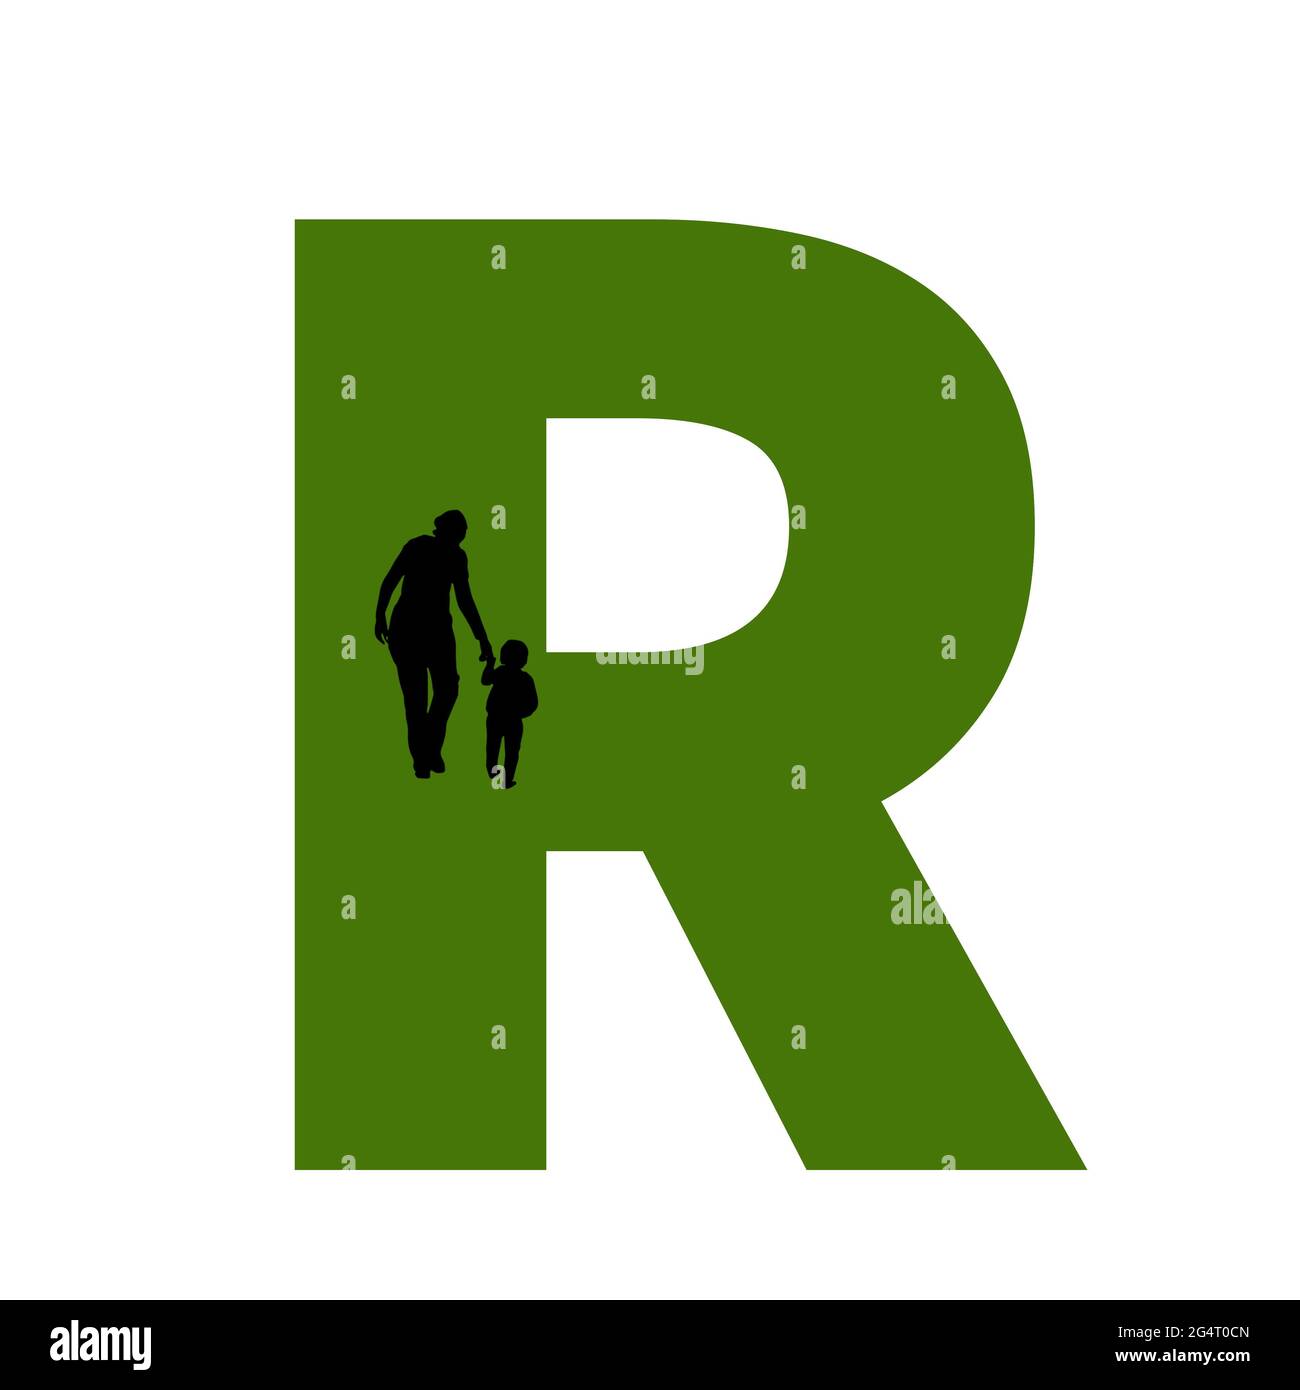 Lettera R dell'alfabeto fatta con la sagoma di una madre e di un bambino che cammina, in verde e nero Foto Stock